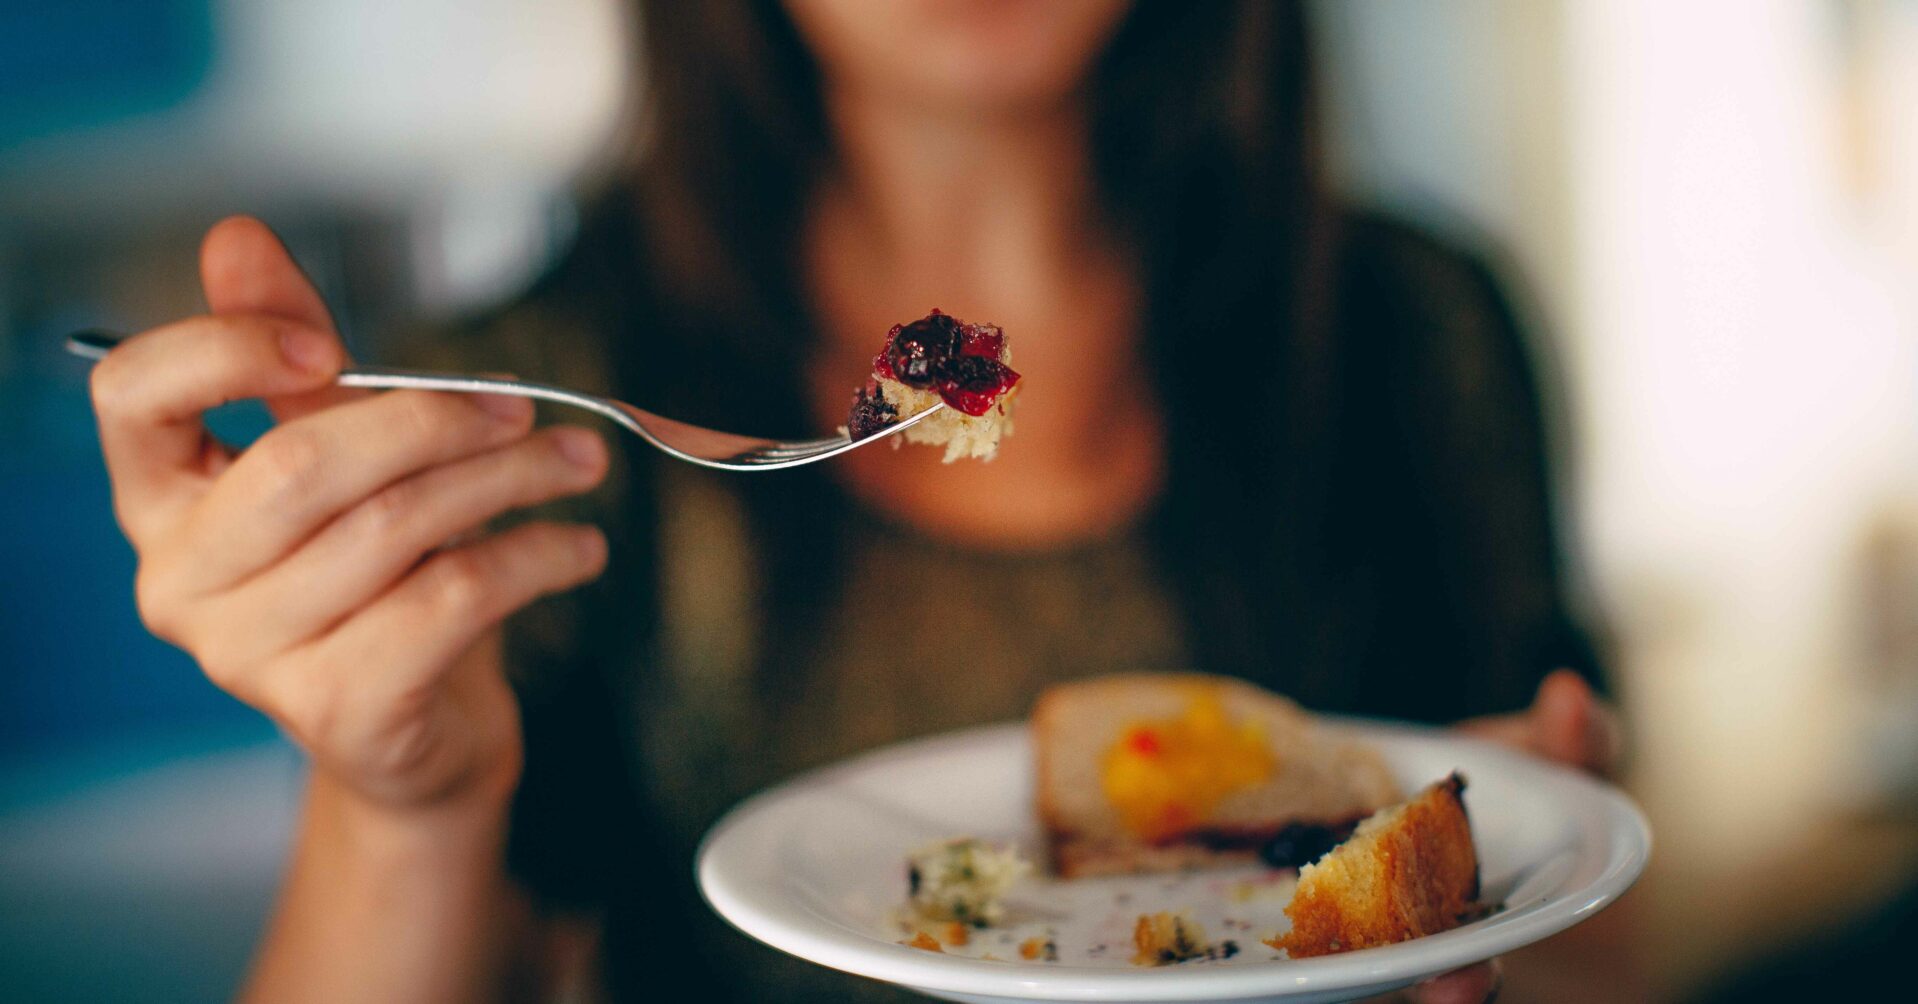 Di INTM Isu “Eating Disorder” Jadi Ramai, Lantas Apa Itu “Eating